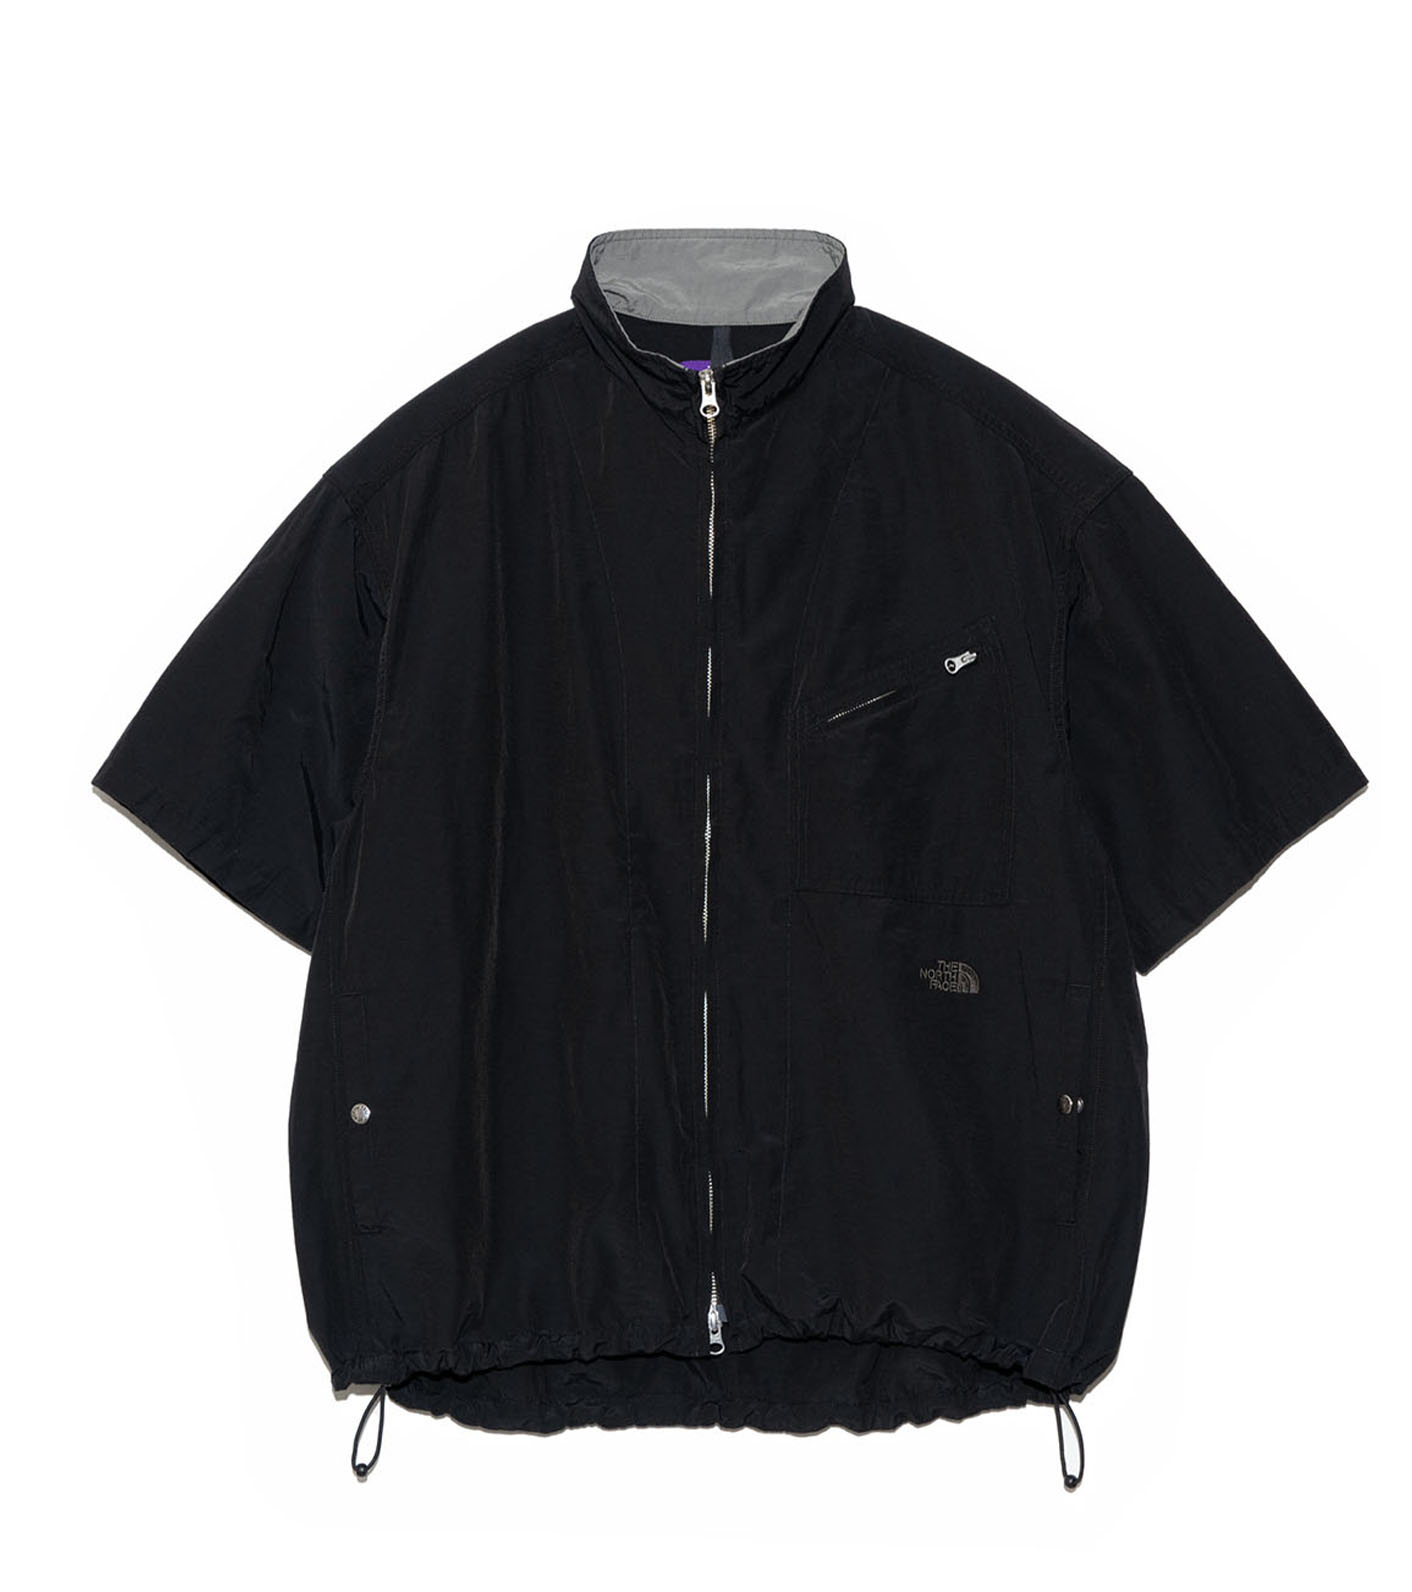 nanamica / Field Short Sleeve Jacket